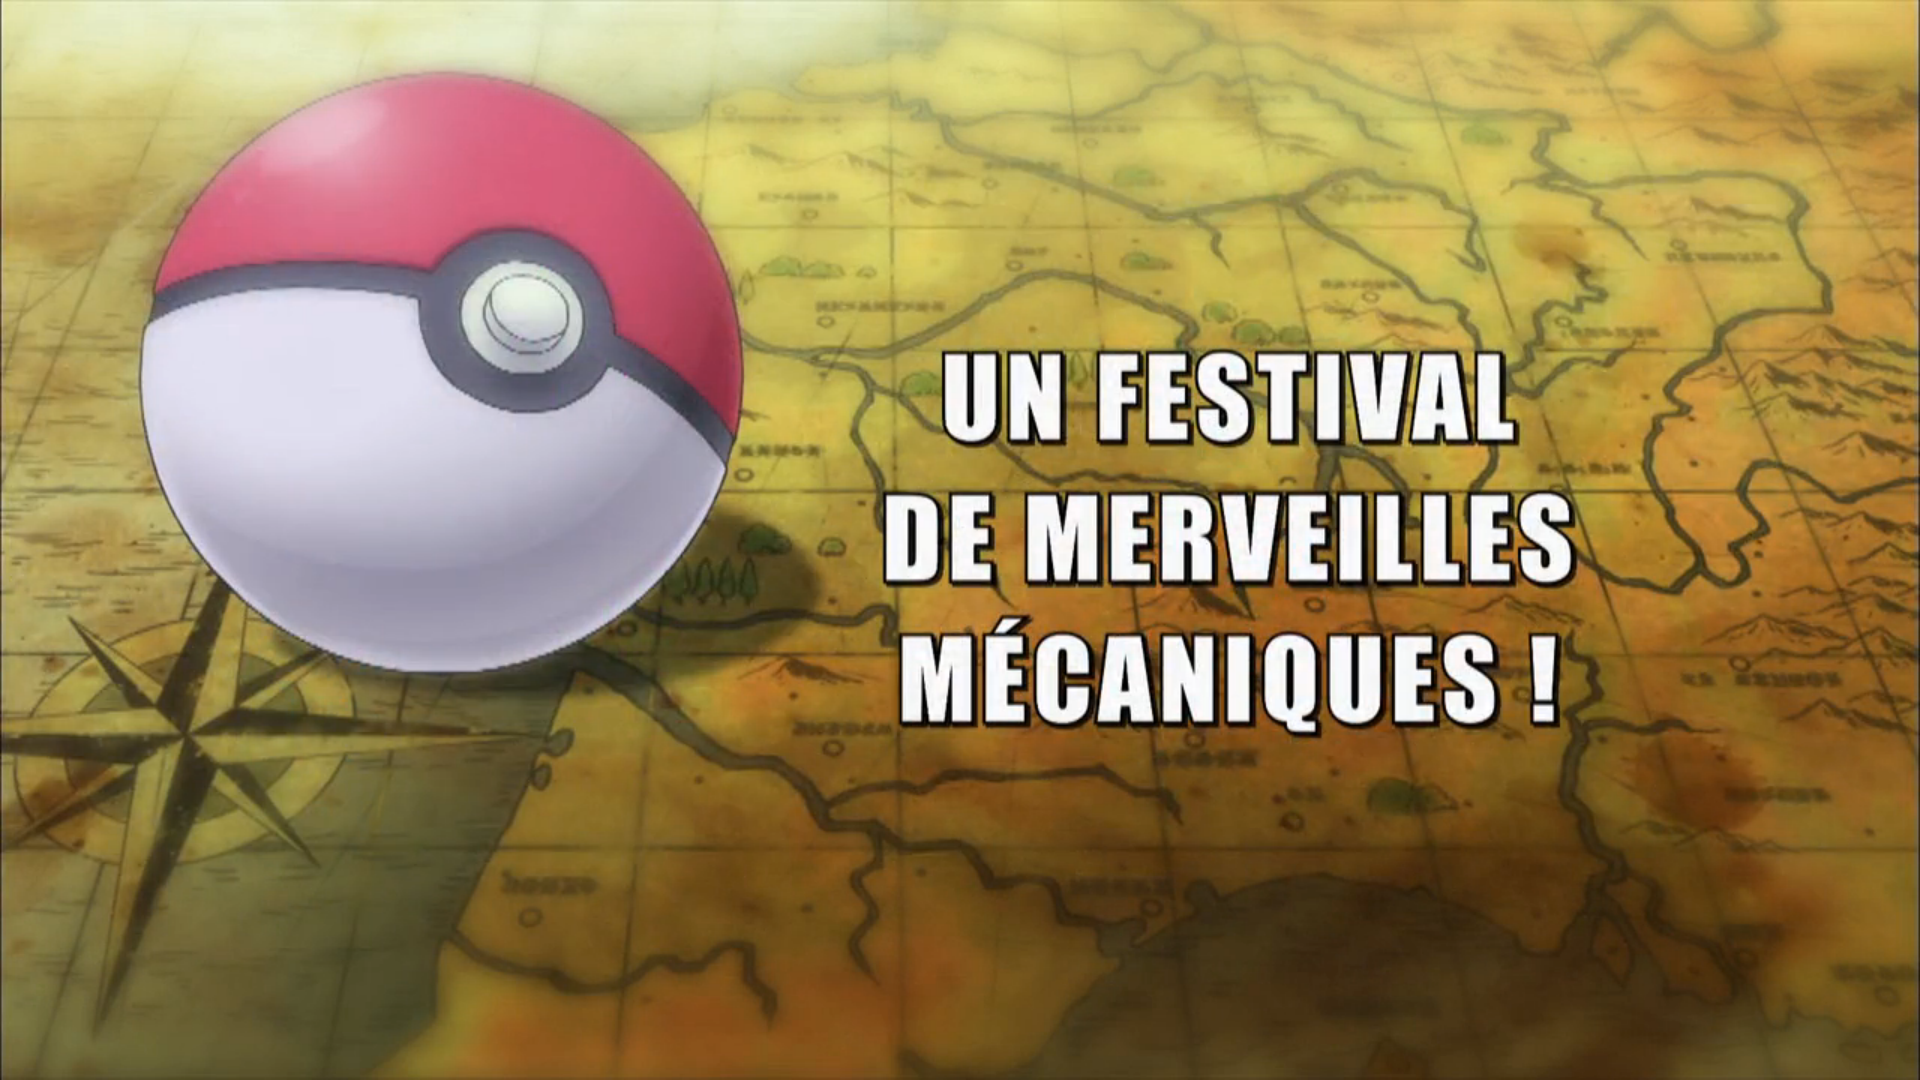 Pokémon - 19x31 - Un festival de merveilles mécaniques !